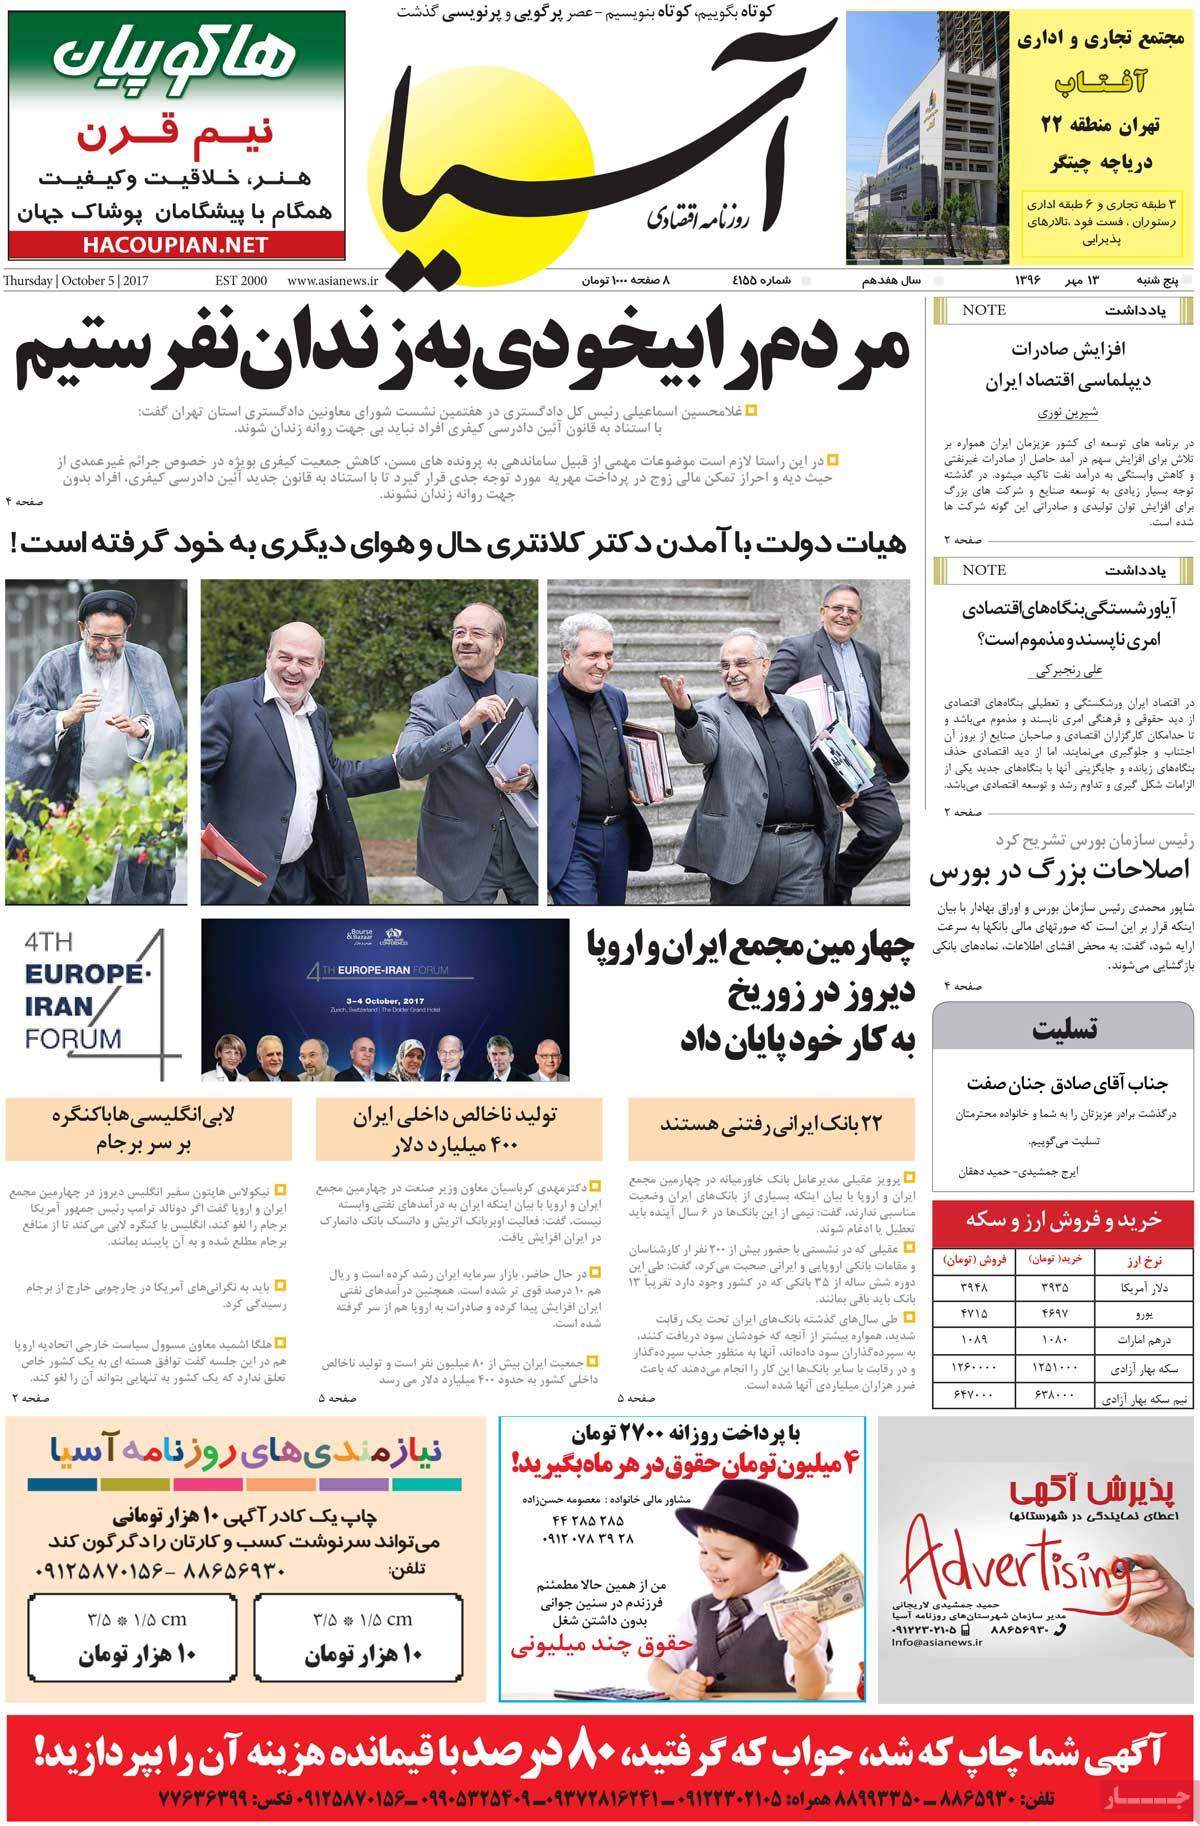 عکس روزنامه اقتصادی امروزپنجشنبه سیزدهم مهرماه 1396,روزنامه,روزنامه های امروز,روزنامه های اقتصادی